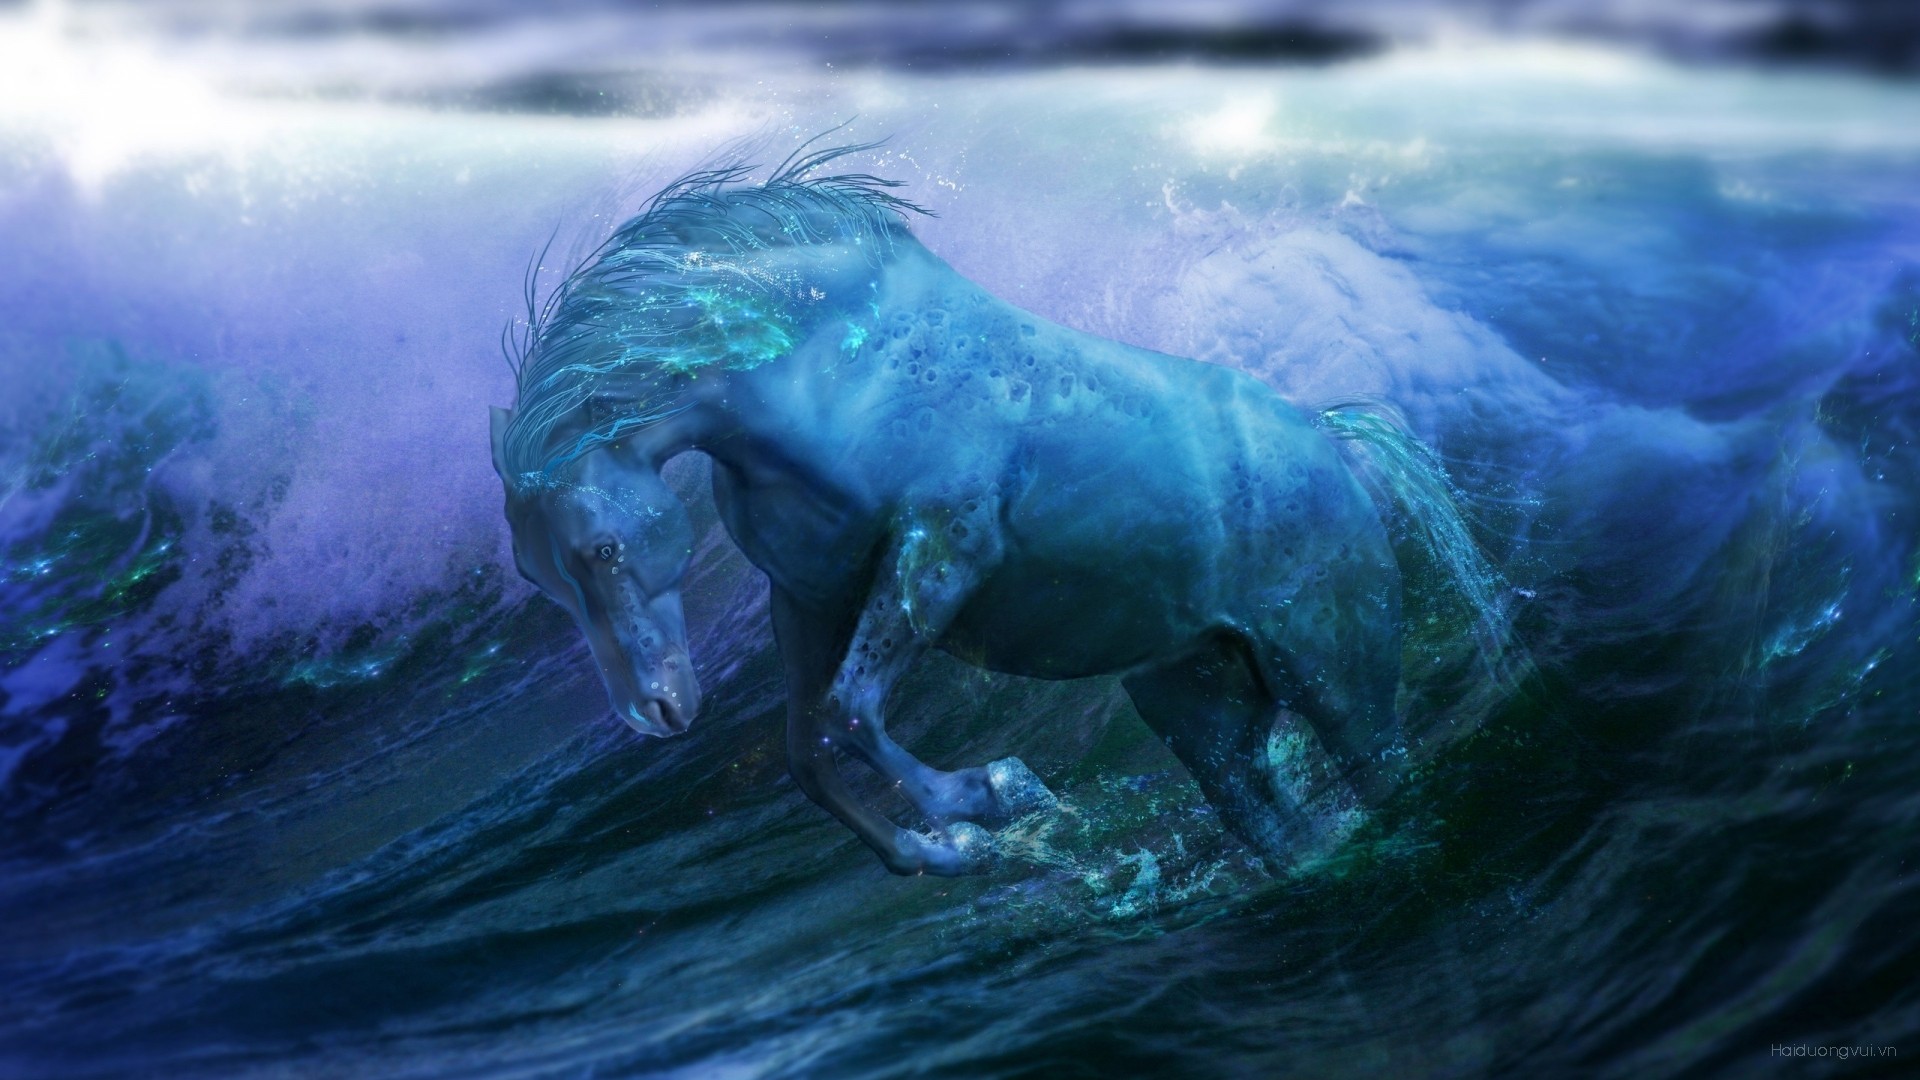 General 1920x1080 fantasy art horse artwork water digital art